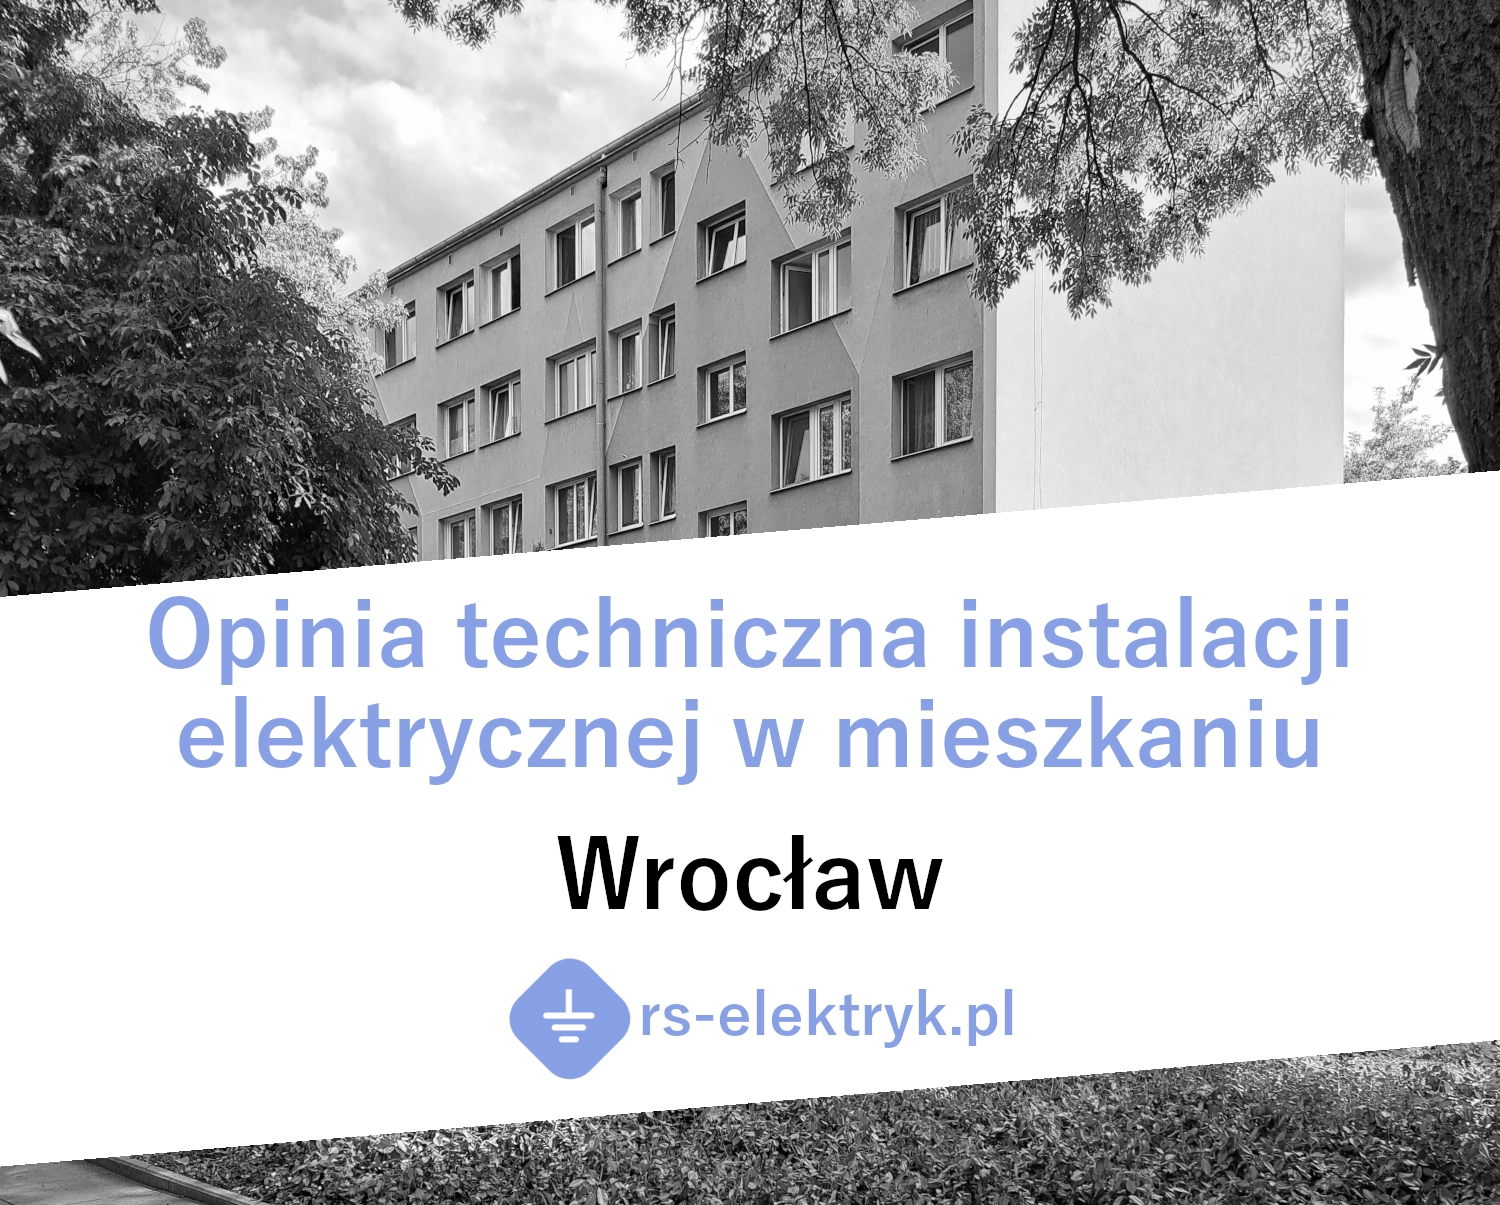 Opinia techniczna instalacji elektrycznej w mieszkaniu (Wrocław)